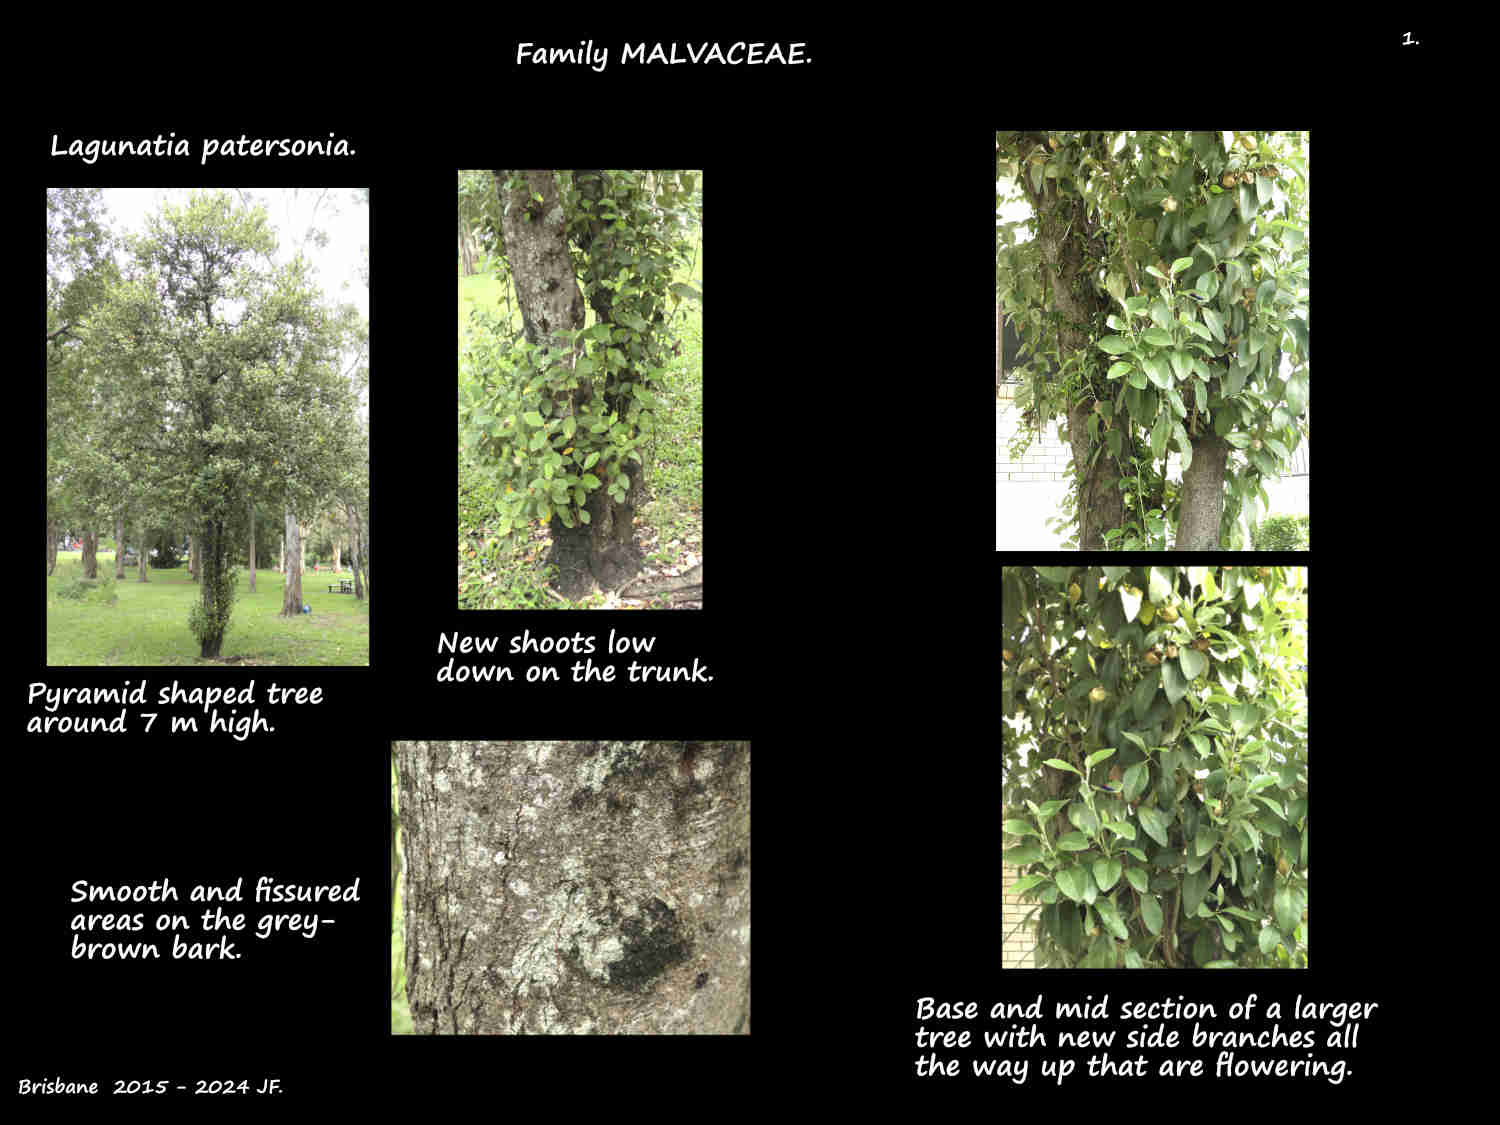 1 Lagunaria patersonia trees